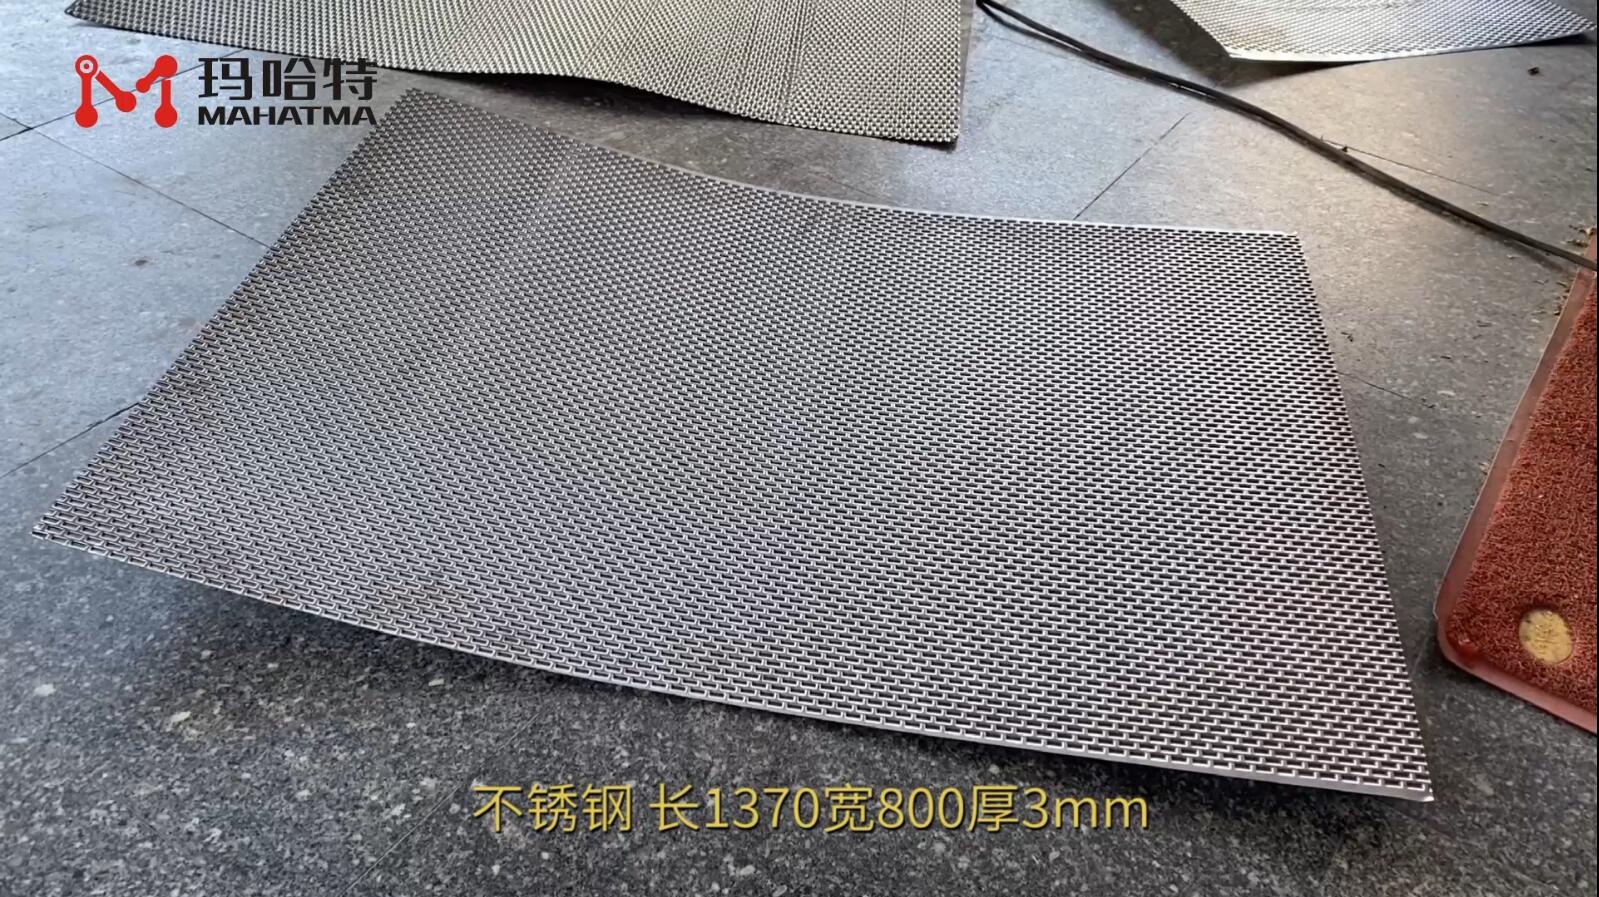 不锈钢 MHT50-1300 长方形 长1370宽800厚3mm